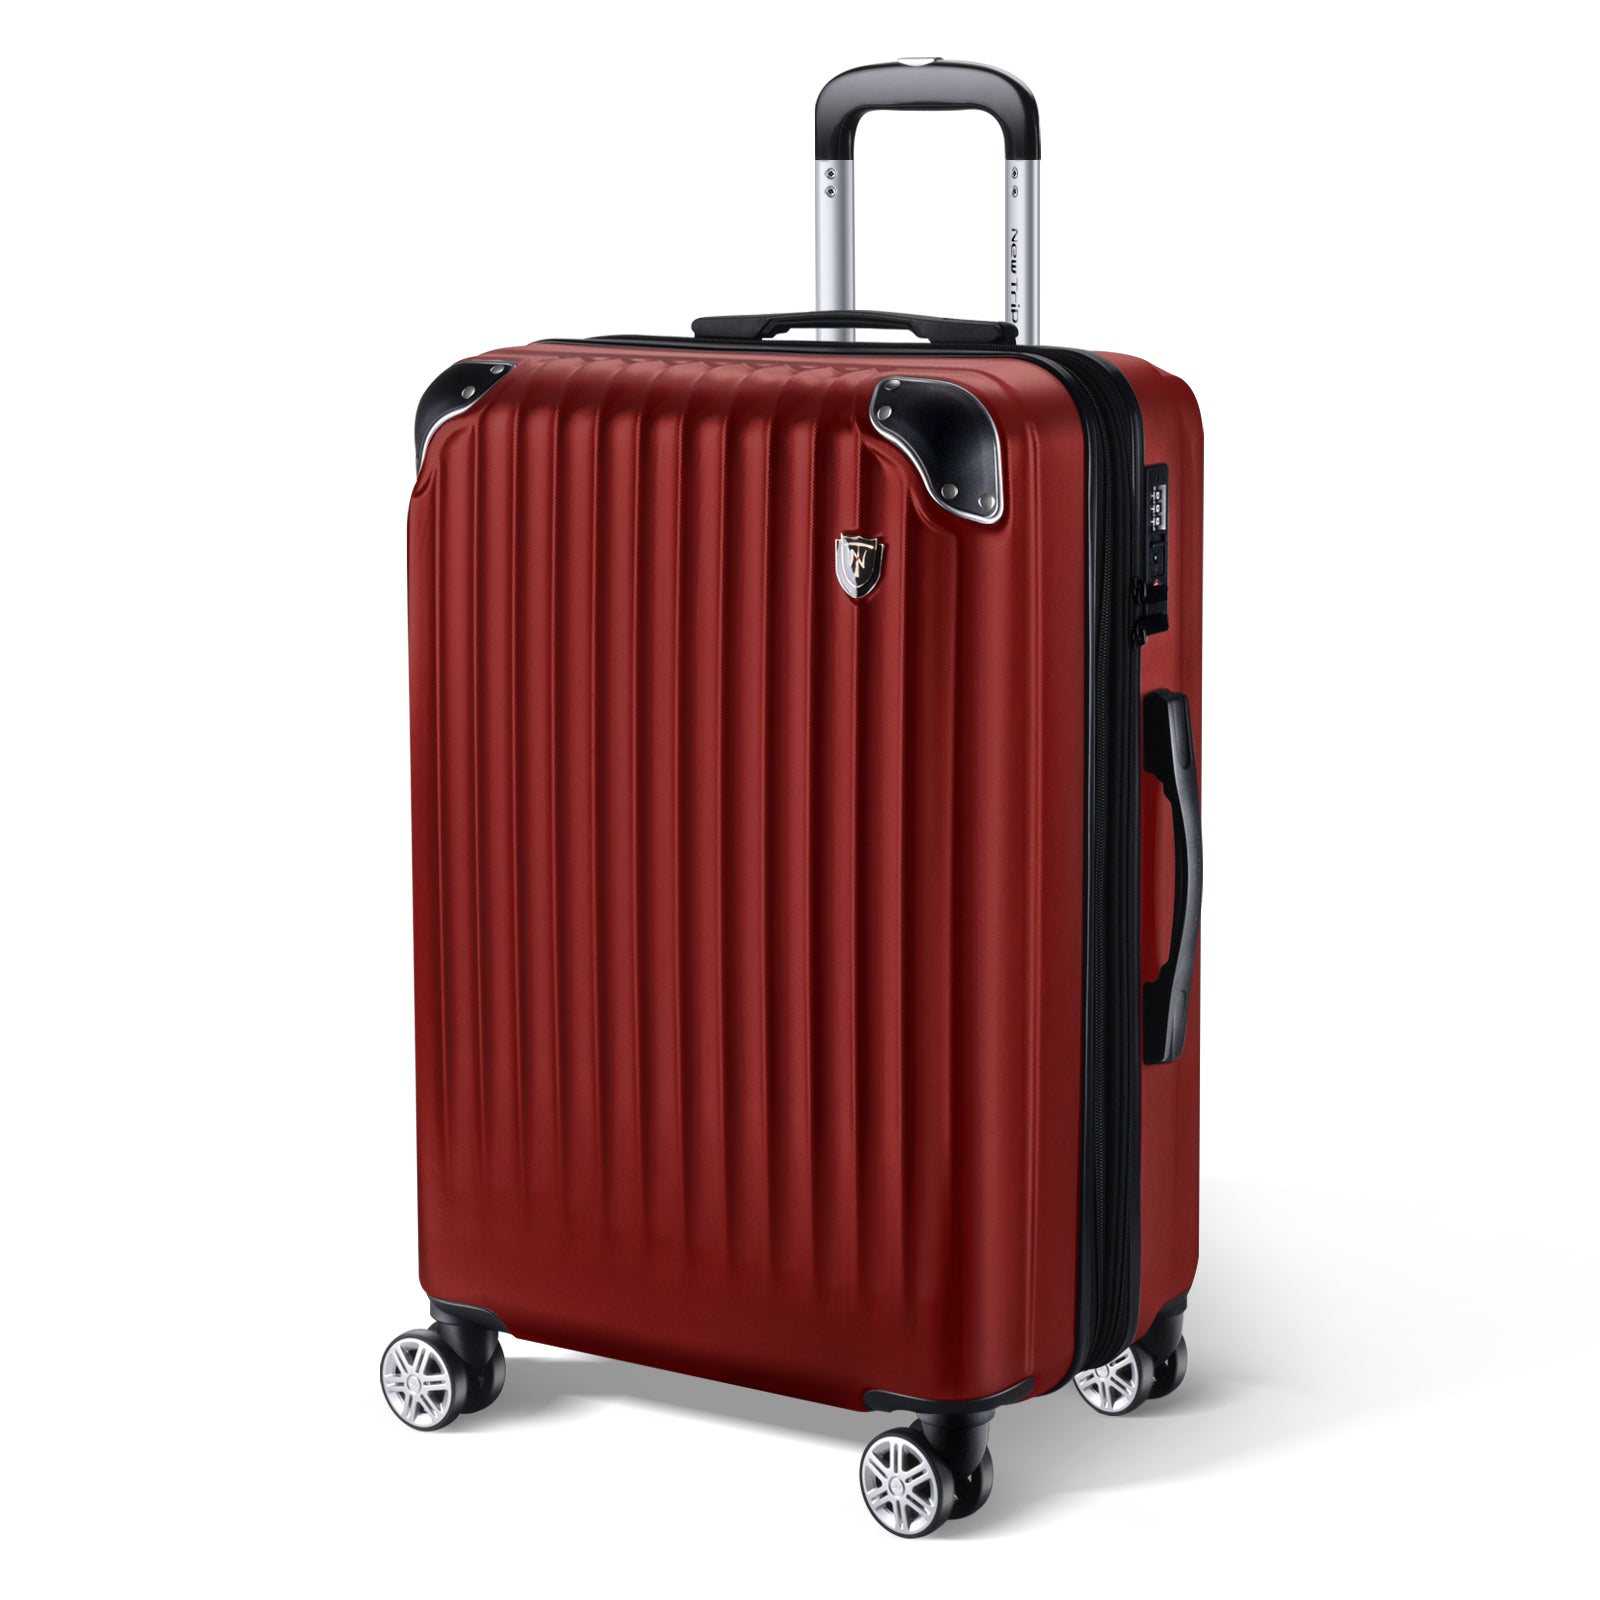 New Trip スーツケース 拡張機能付き S-Lサイズ ワインレッド 旅行